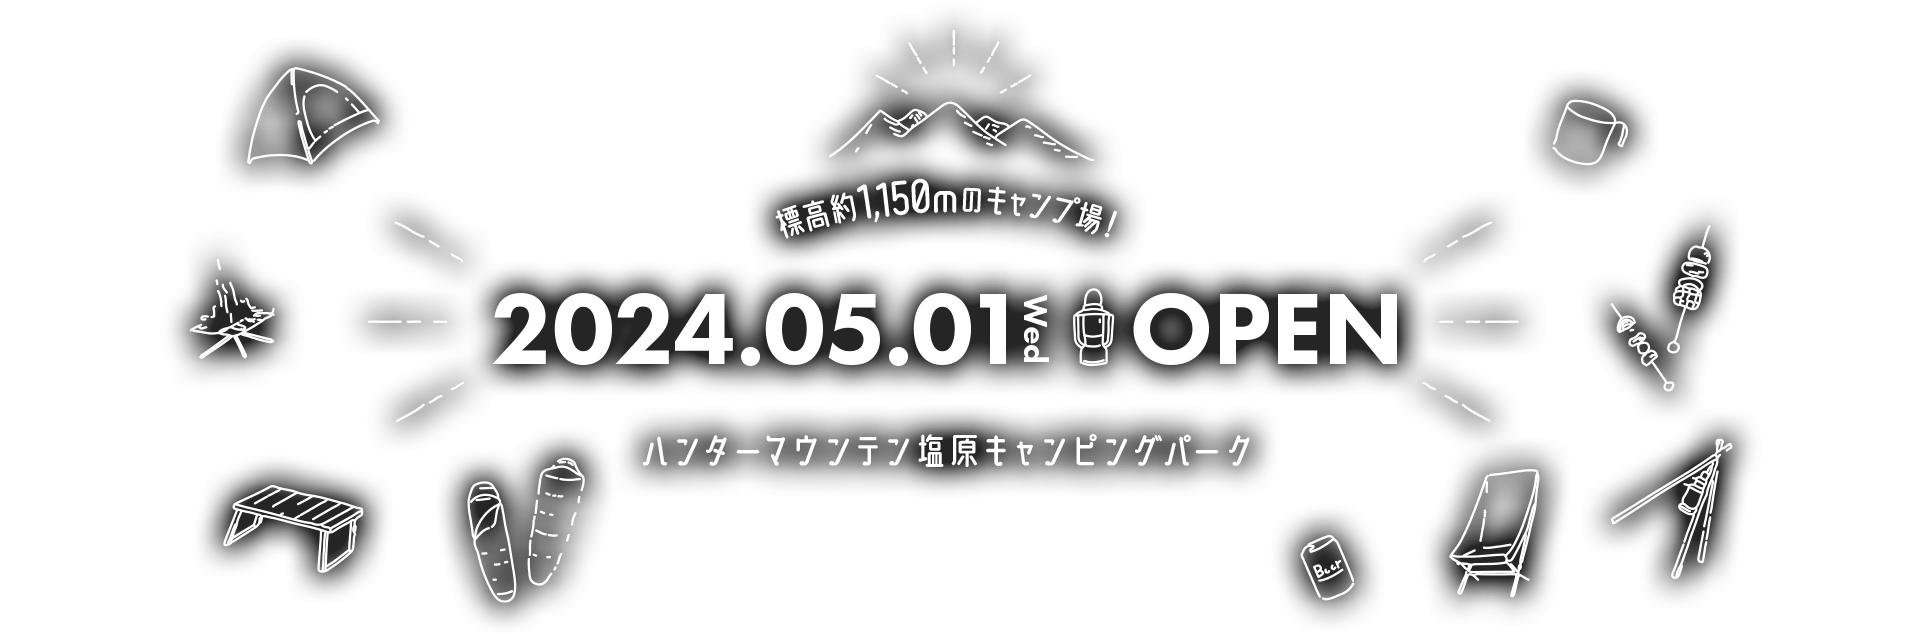 ハンターマウンテン塩原キャンピングパーク 2024.05.01(Wed) Open